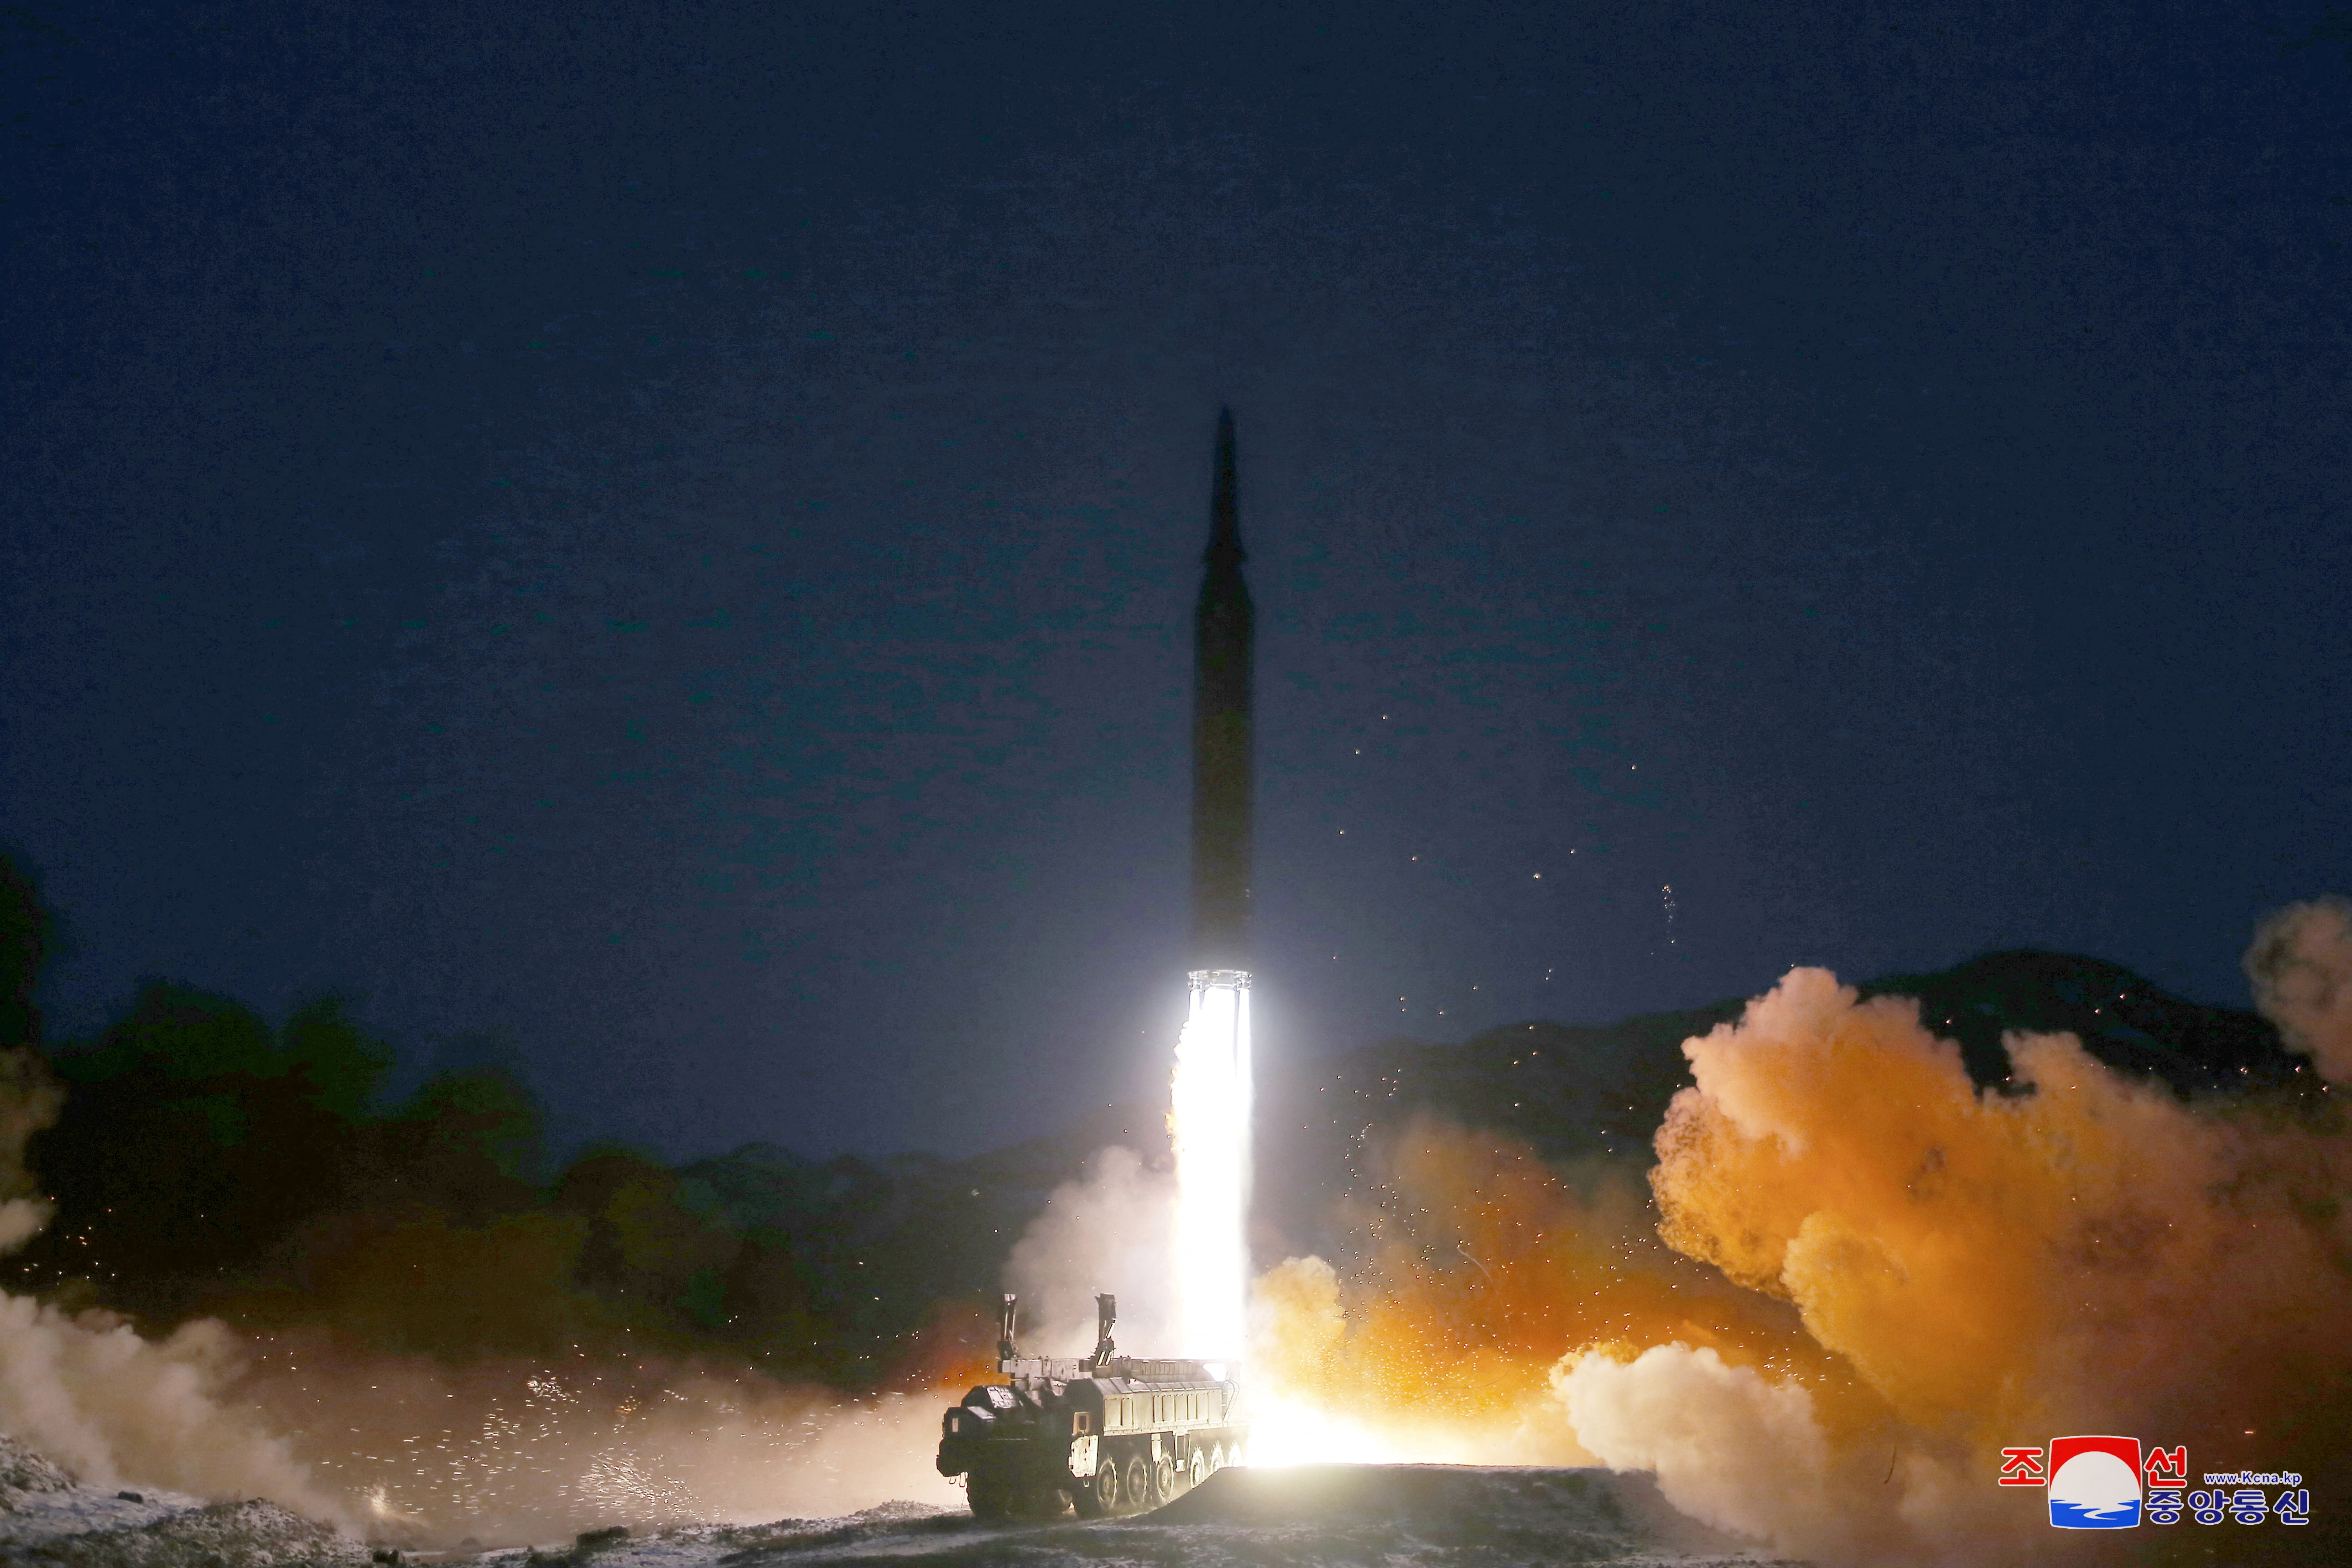 El misil lanzado este martes por Corea del Norte (KCNA via REUTERS)